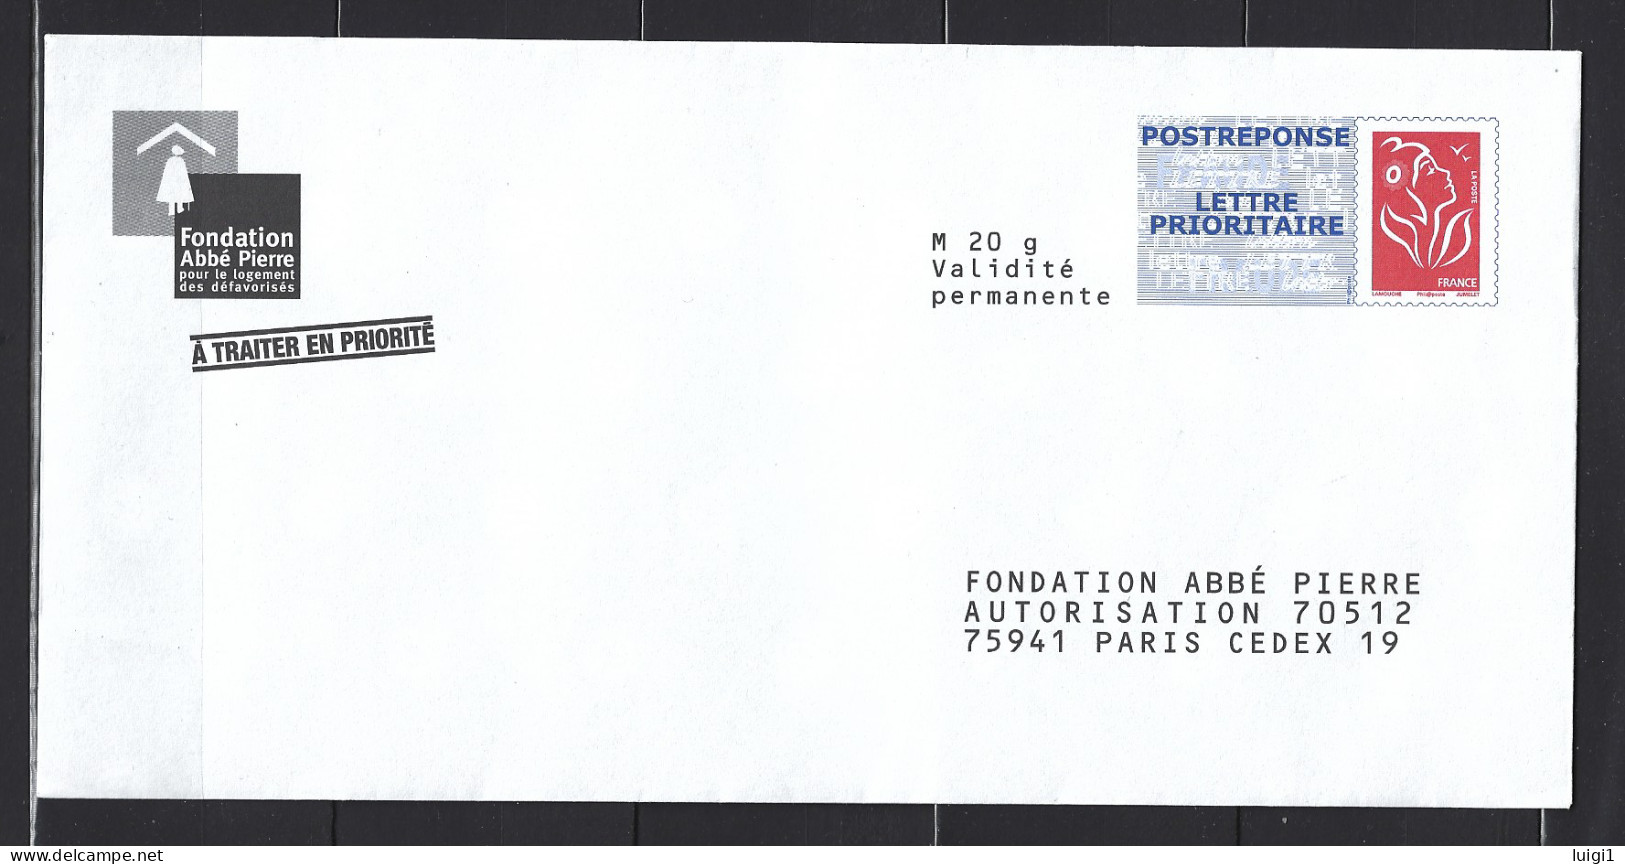 FRANCE 2006 - LAMOUCHE - Enveloppe PAP POSTREPONSE Repiqué (Phil@poste) ." Fondation Abbé Pierre " . Neuf. TB. - Prêts-à-poster: Réponse /Lamouche